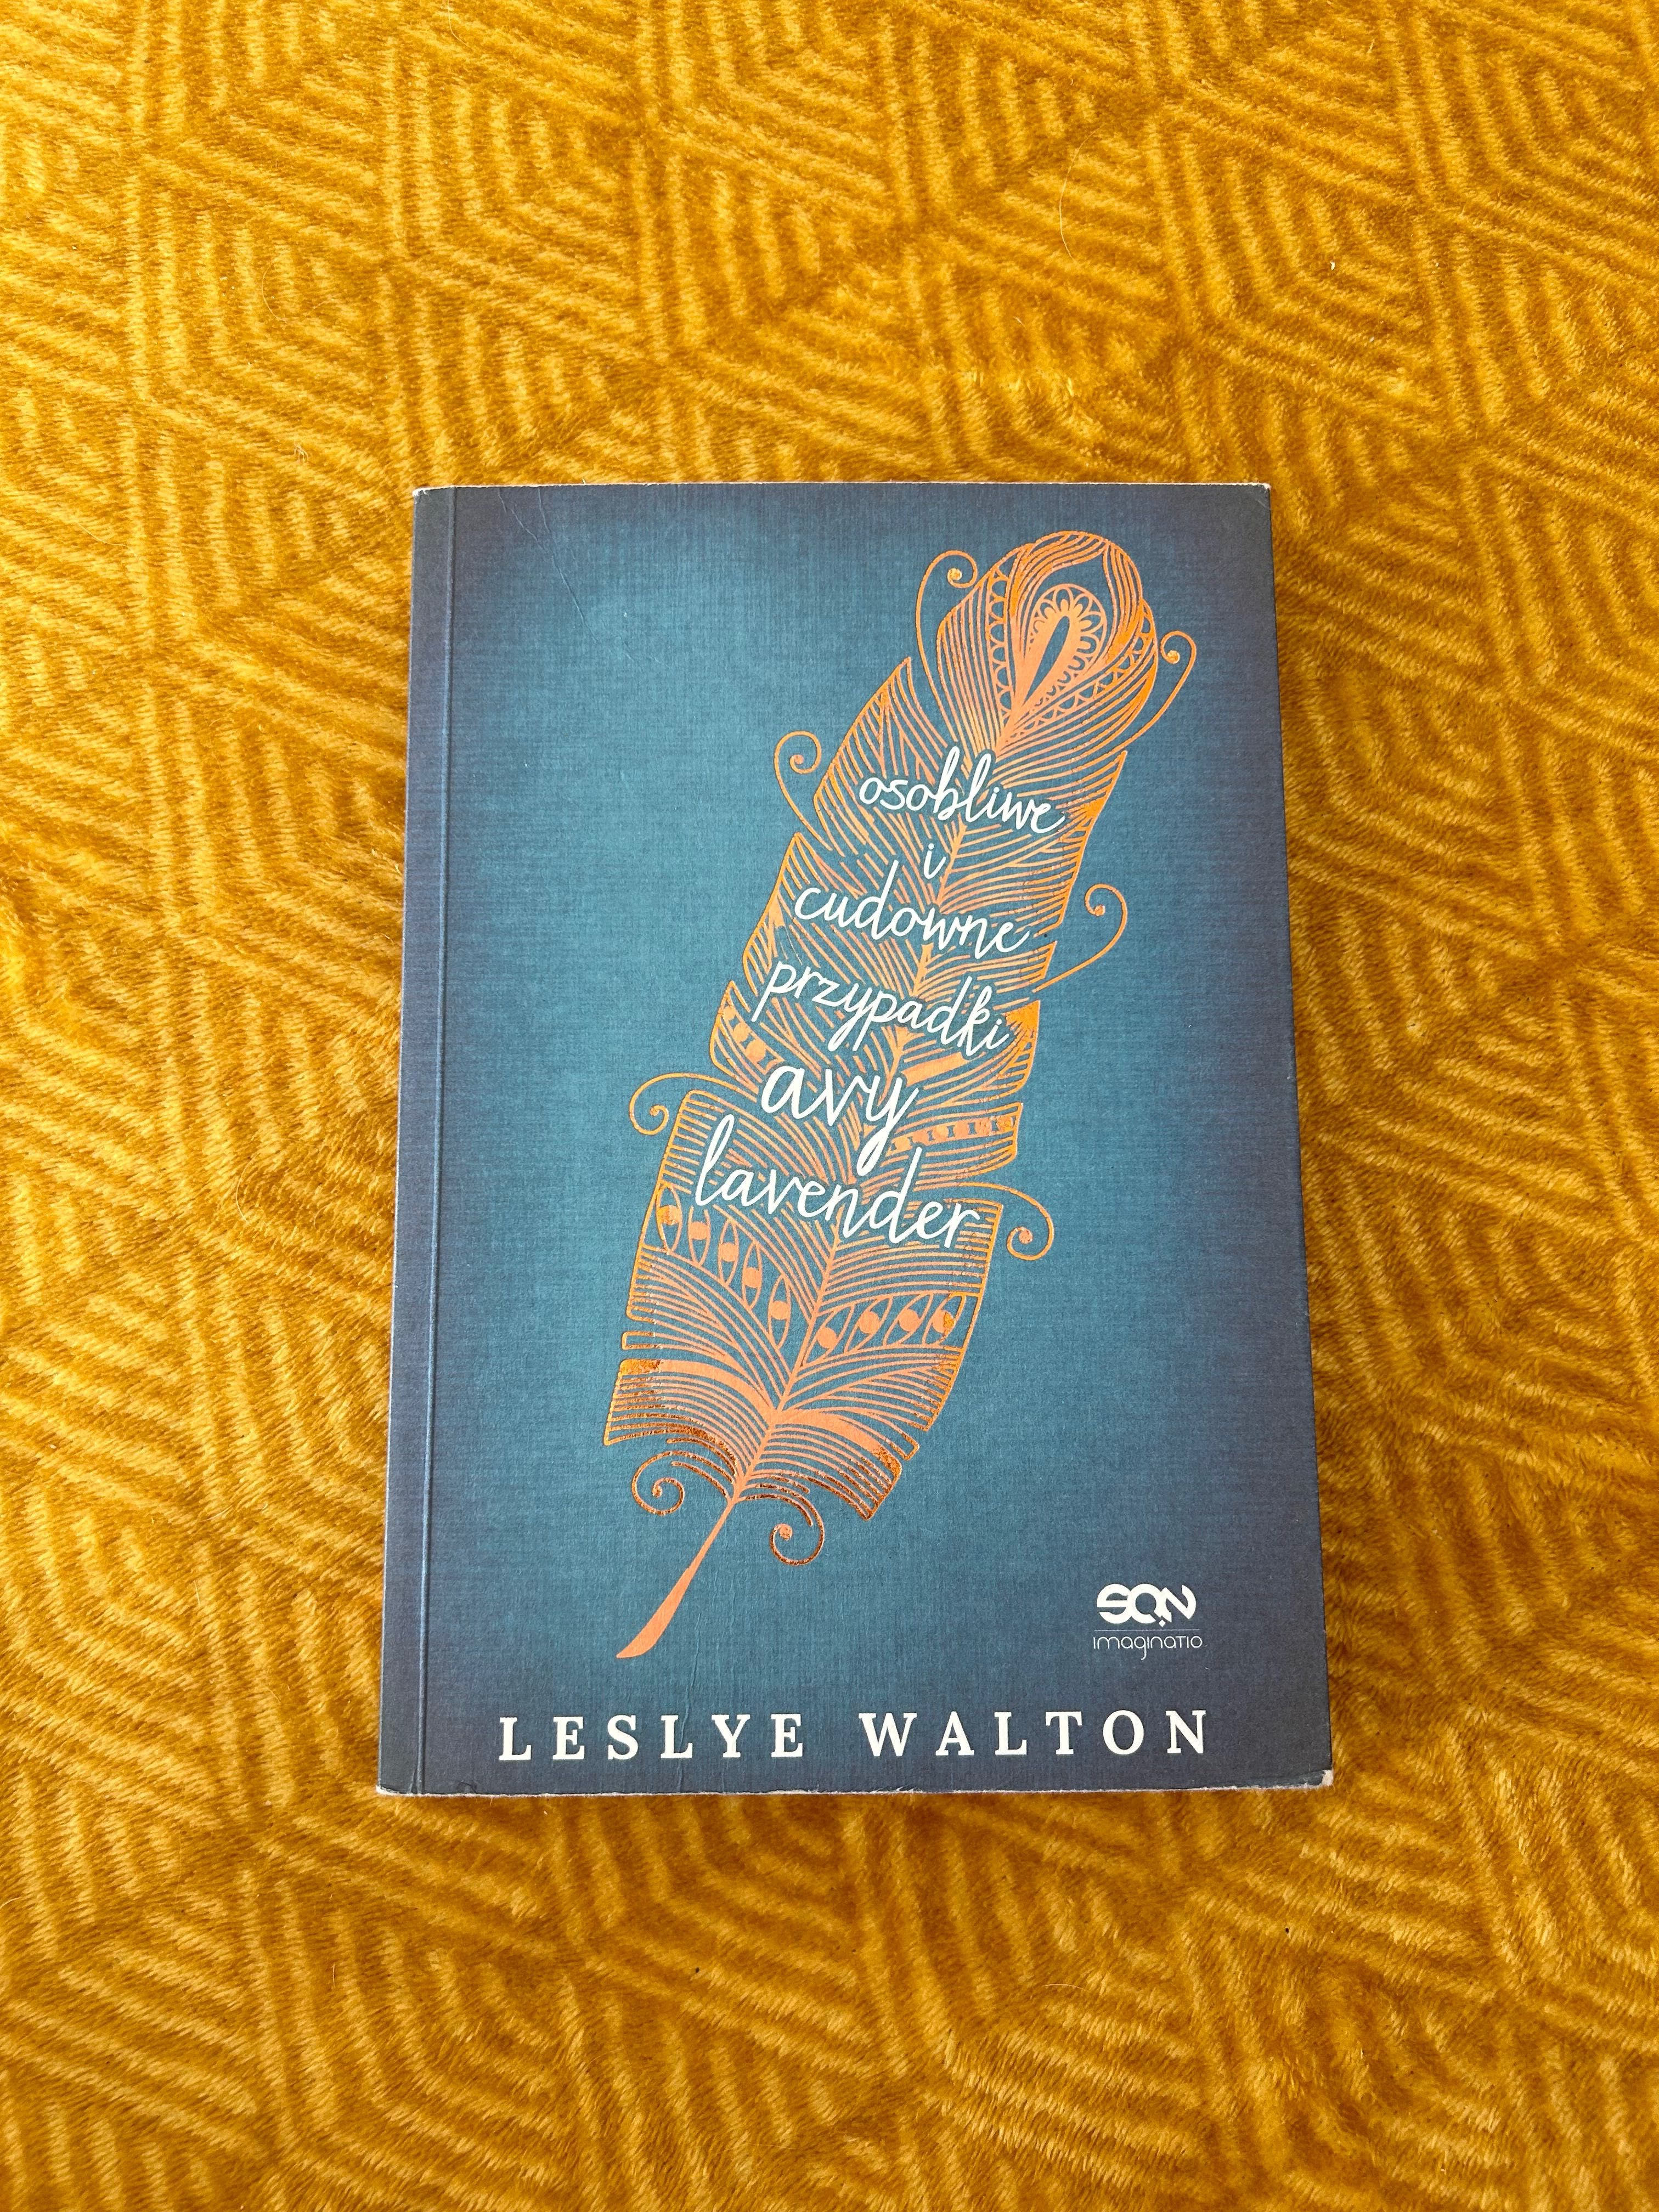 Leslye Walton Osobliwe i cudowne przypadki Avy Lavender